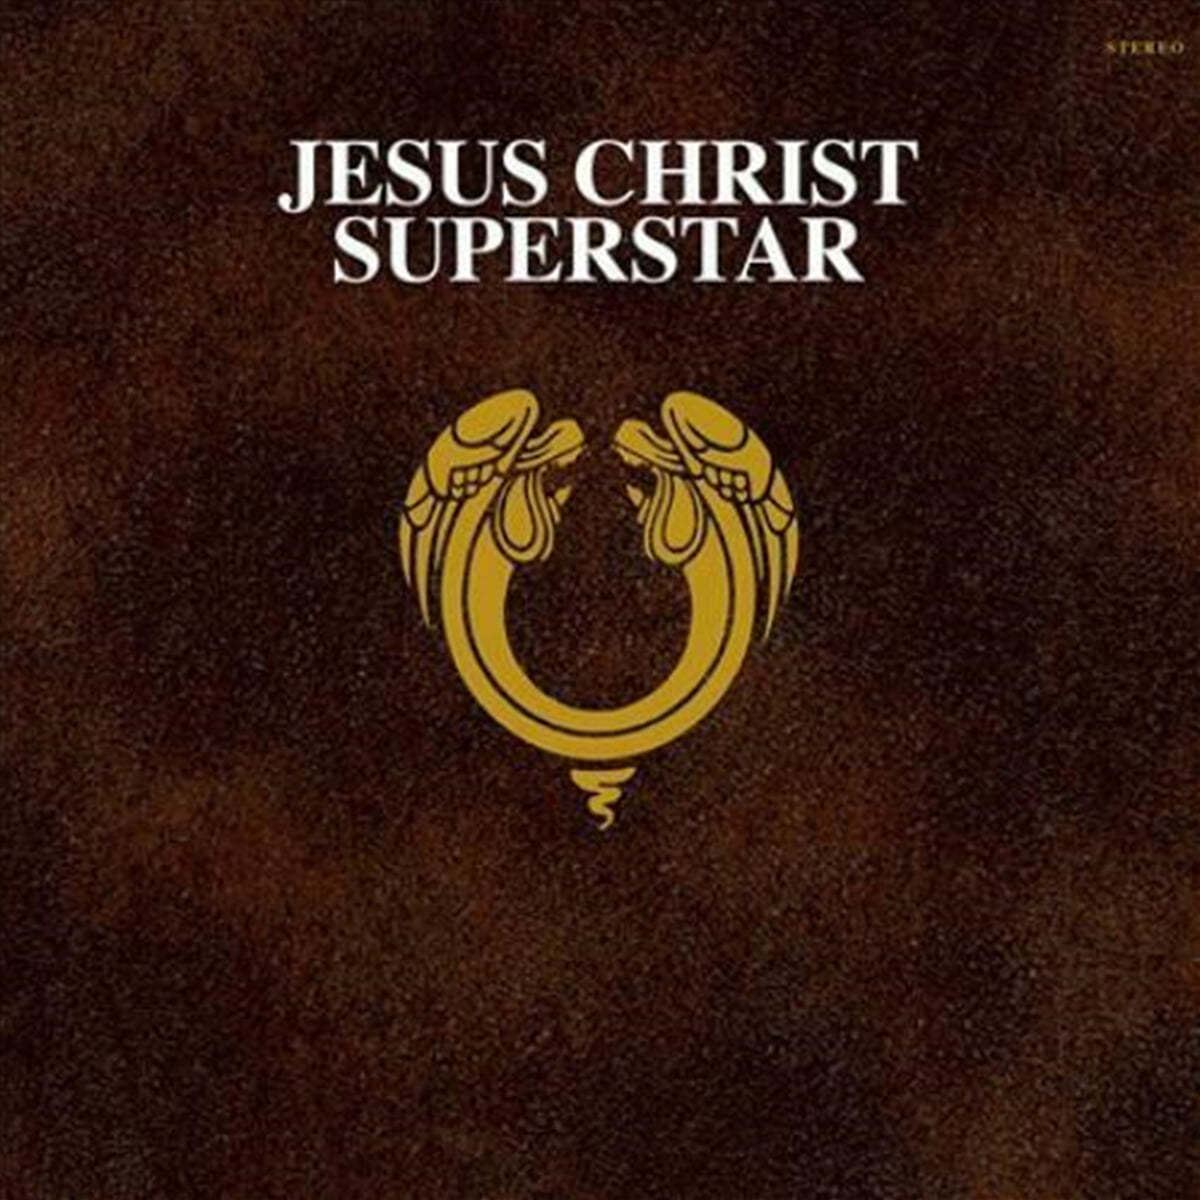 지저스 크라이스트 슈퍼스타 뮤지컬음악 (Jesus Christ Superstar OST by Andrew Lloyd Webber / Tim Rice) [2LP] 